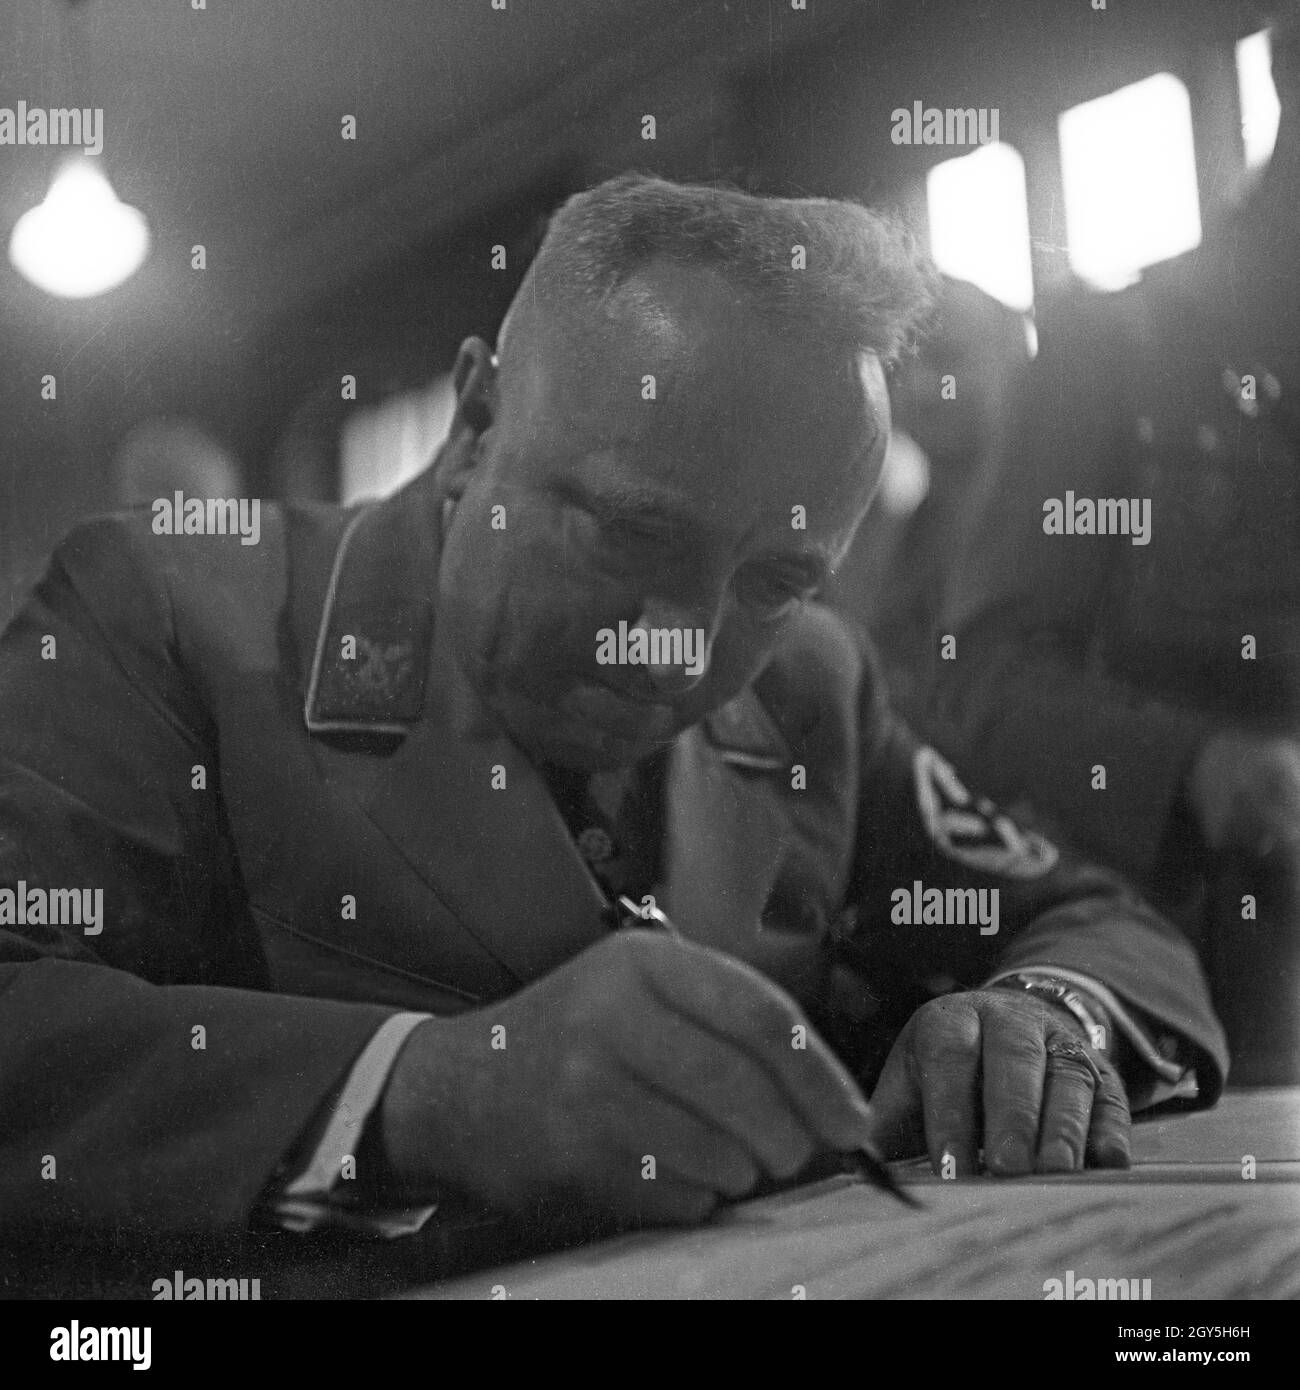 Reichsleiter Robert Ley leistet eine Unterschrift, Deutschland 1930er Jahre.Reichsleiter Robert ley signe un document, Allemagne des années 1930. Banque D'Images